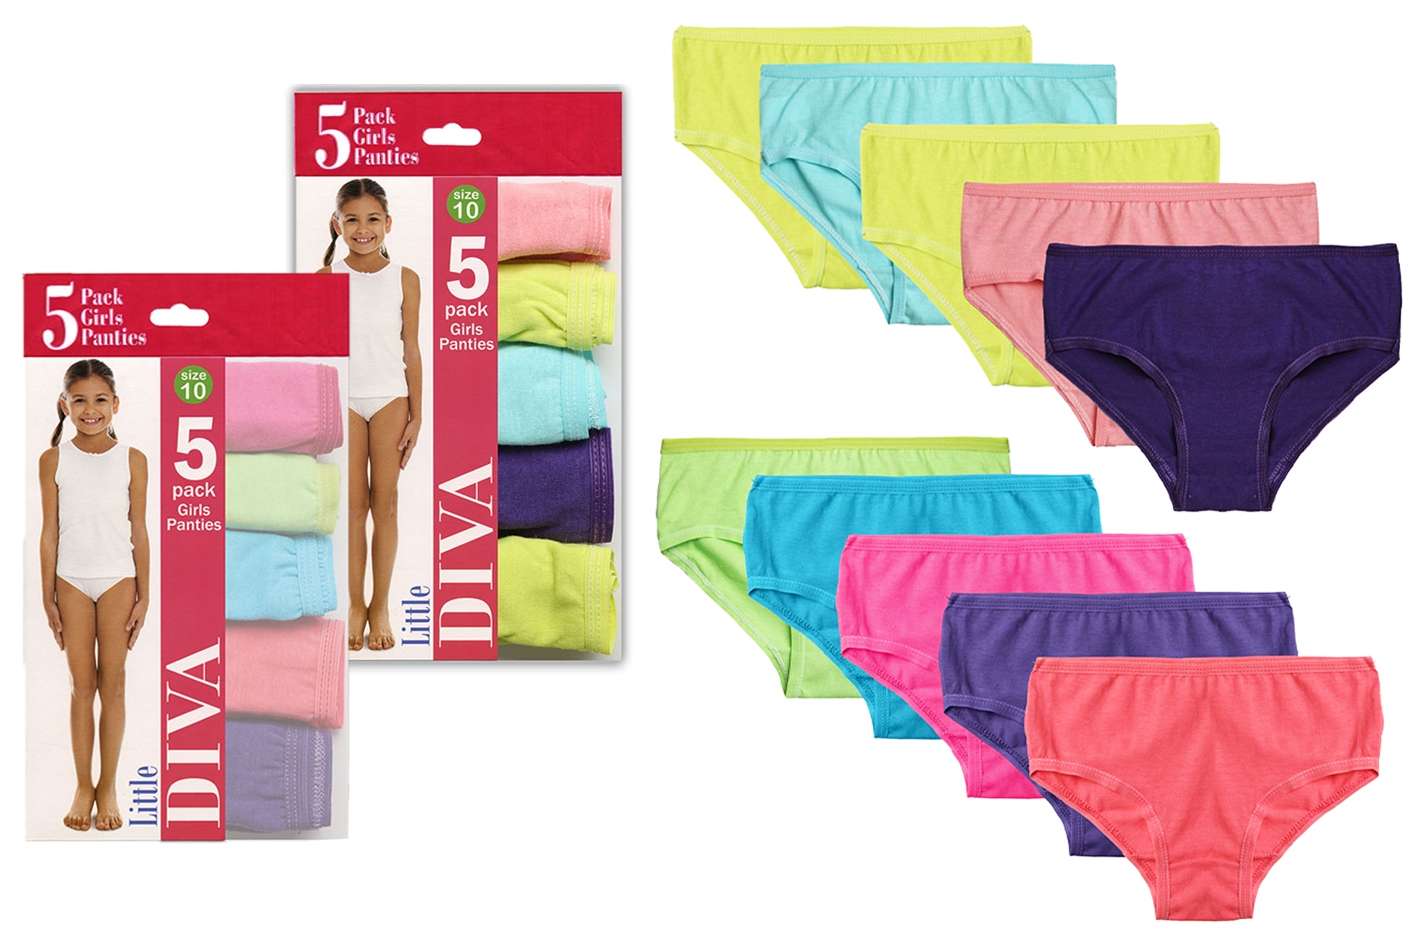 Hanes Women's 5Pack Assorted Cotton Briefs Ladies Panties